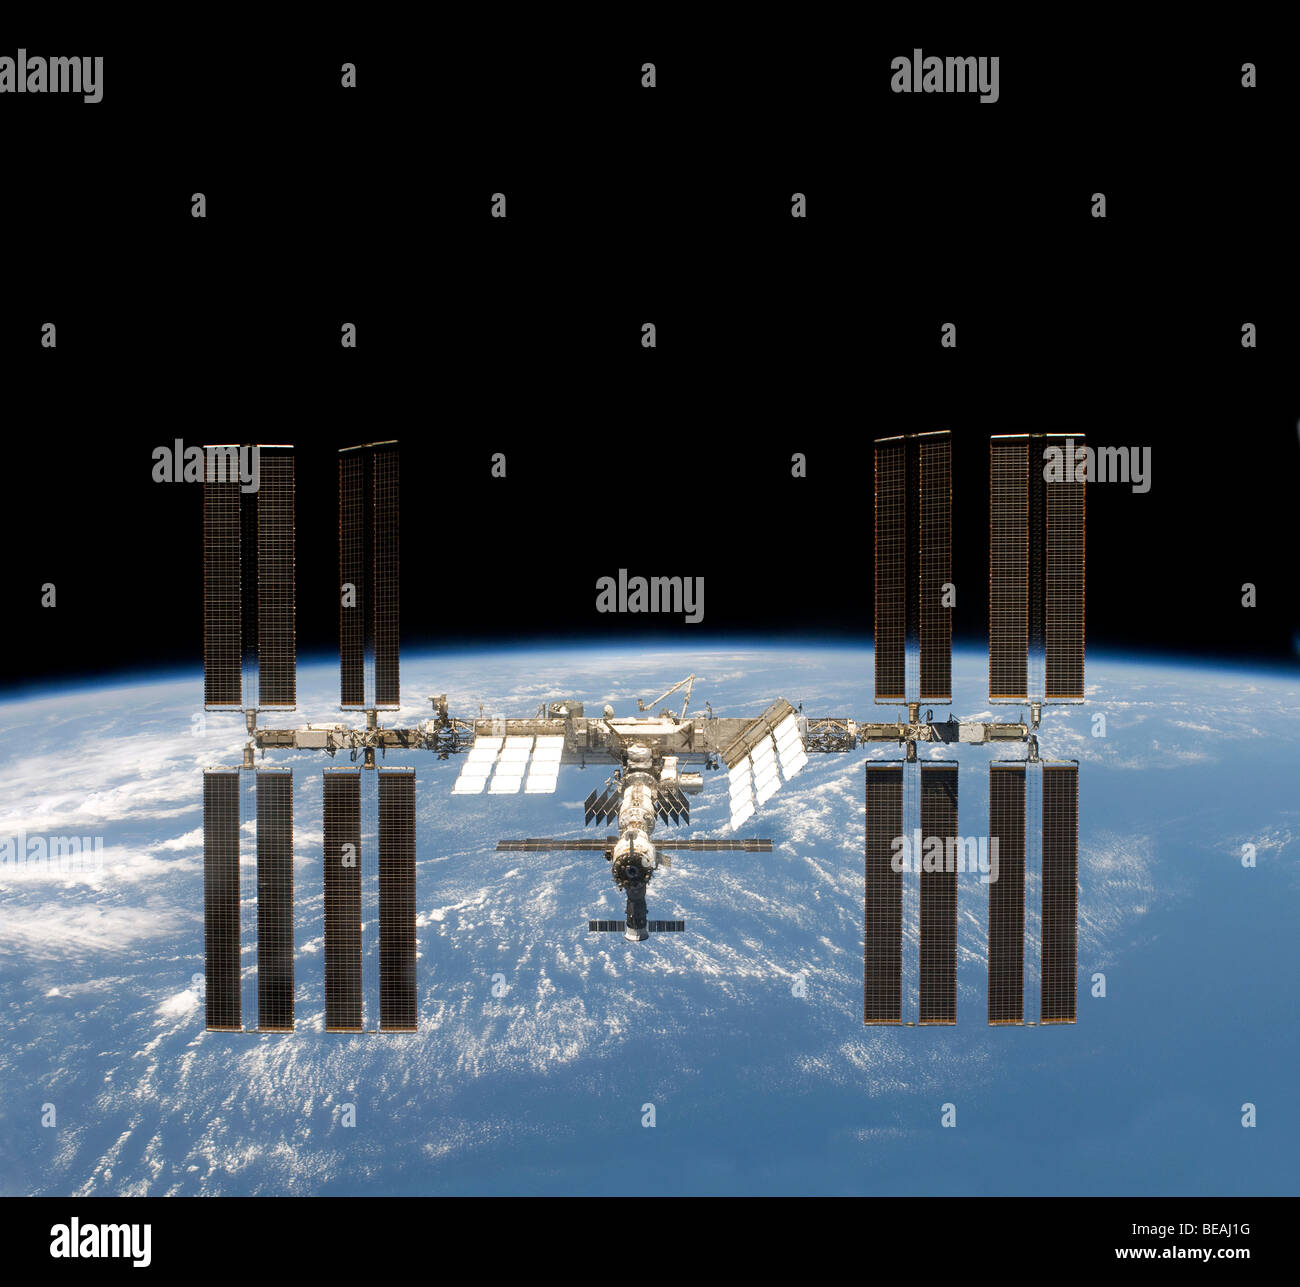 La Estación Espacial Internacional. Versión mejorada y optimizada de la imagen original de la NASA. Marzo de 2009 Foto de stock